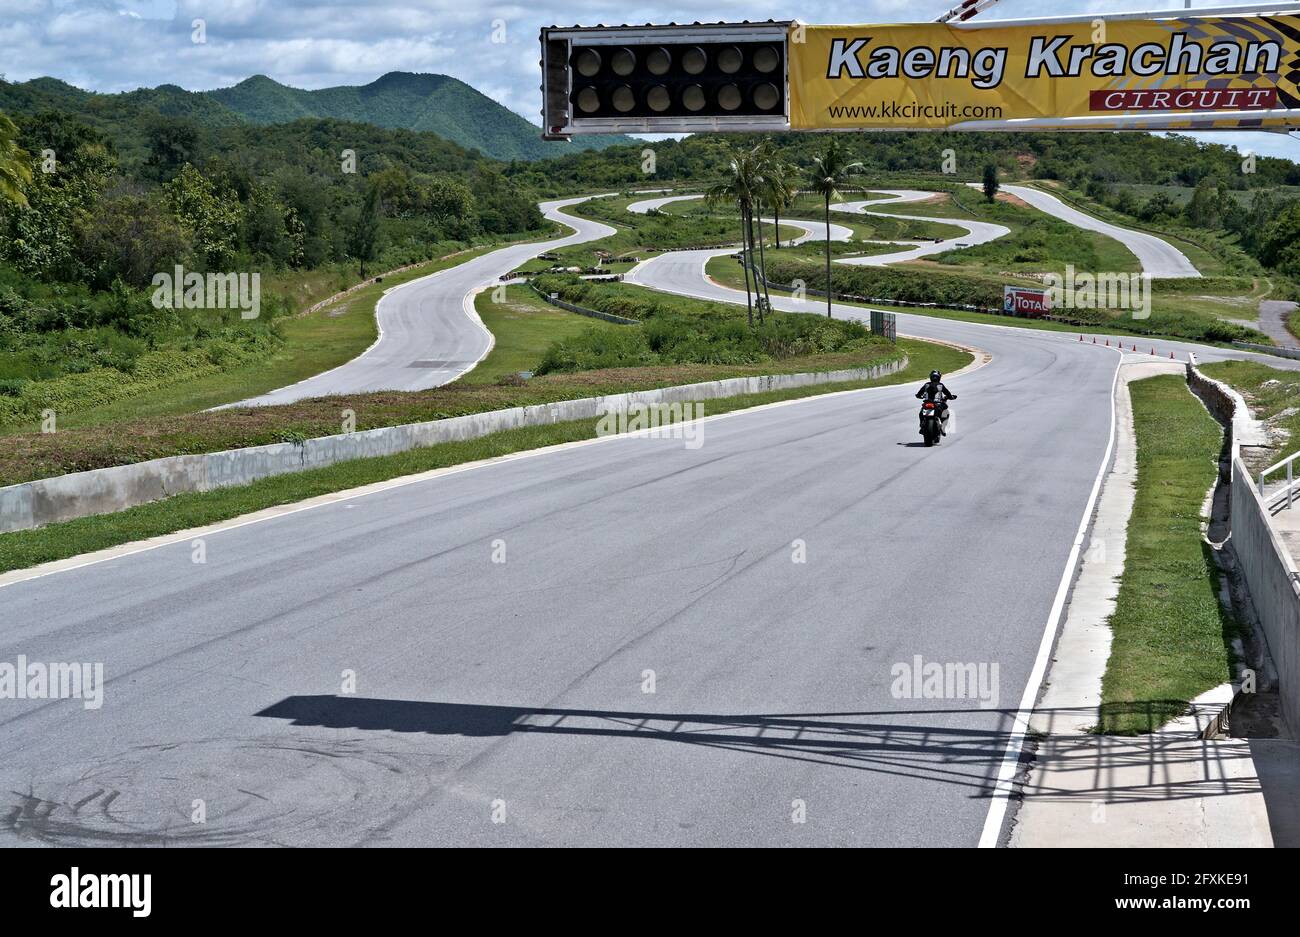 Kaeng Krachan Motorradrennen mit einsamen Motorradfahrer. Thailand Petchaburi, Südostasien. Stockfoto